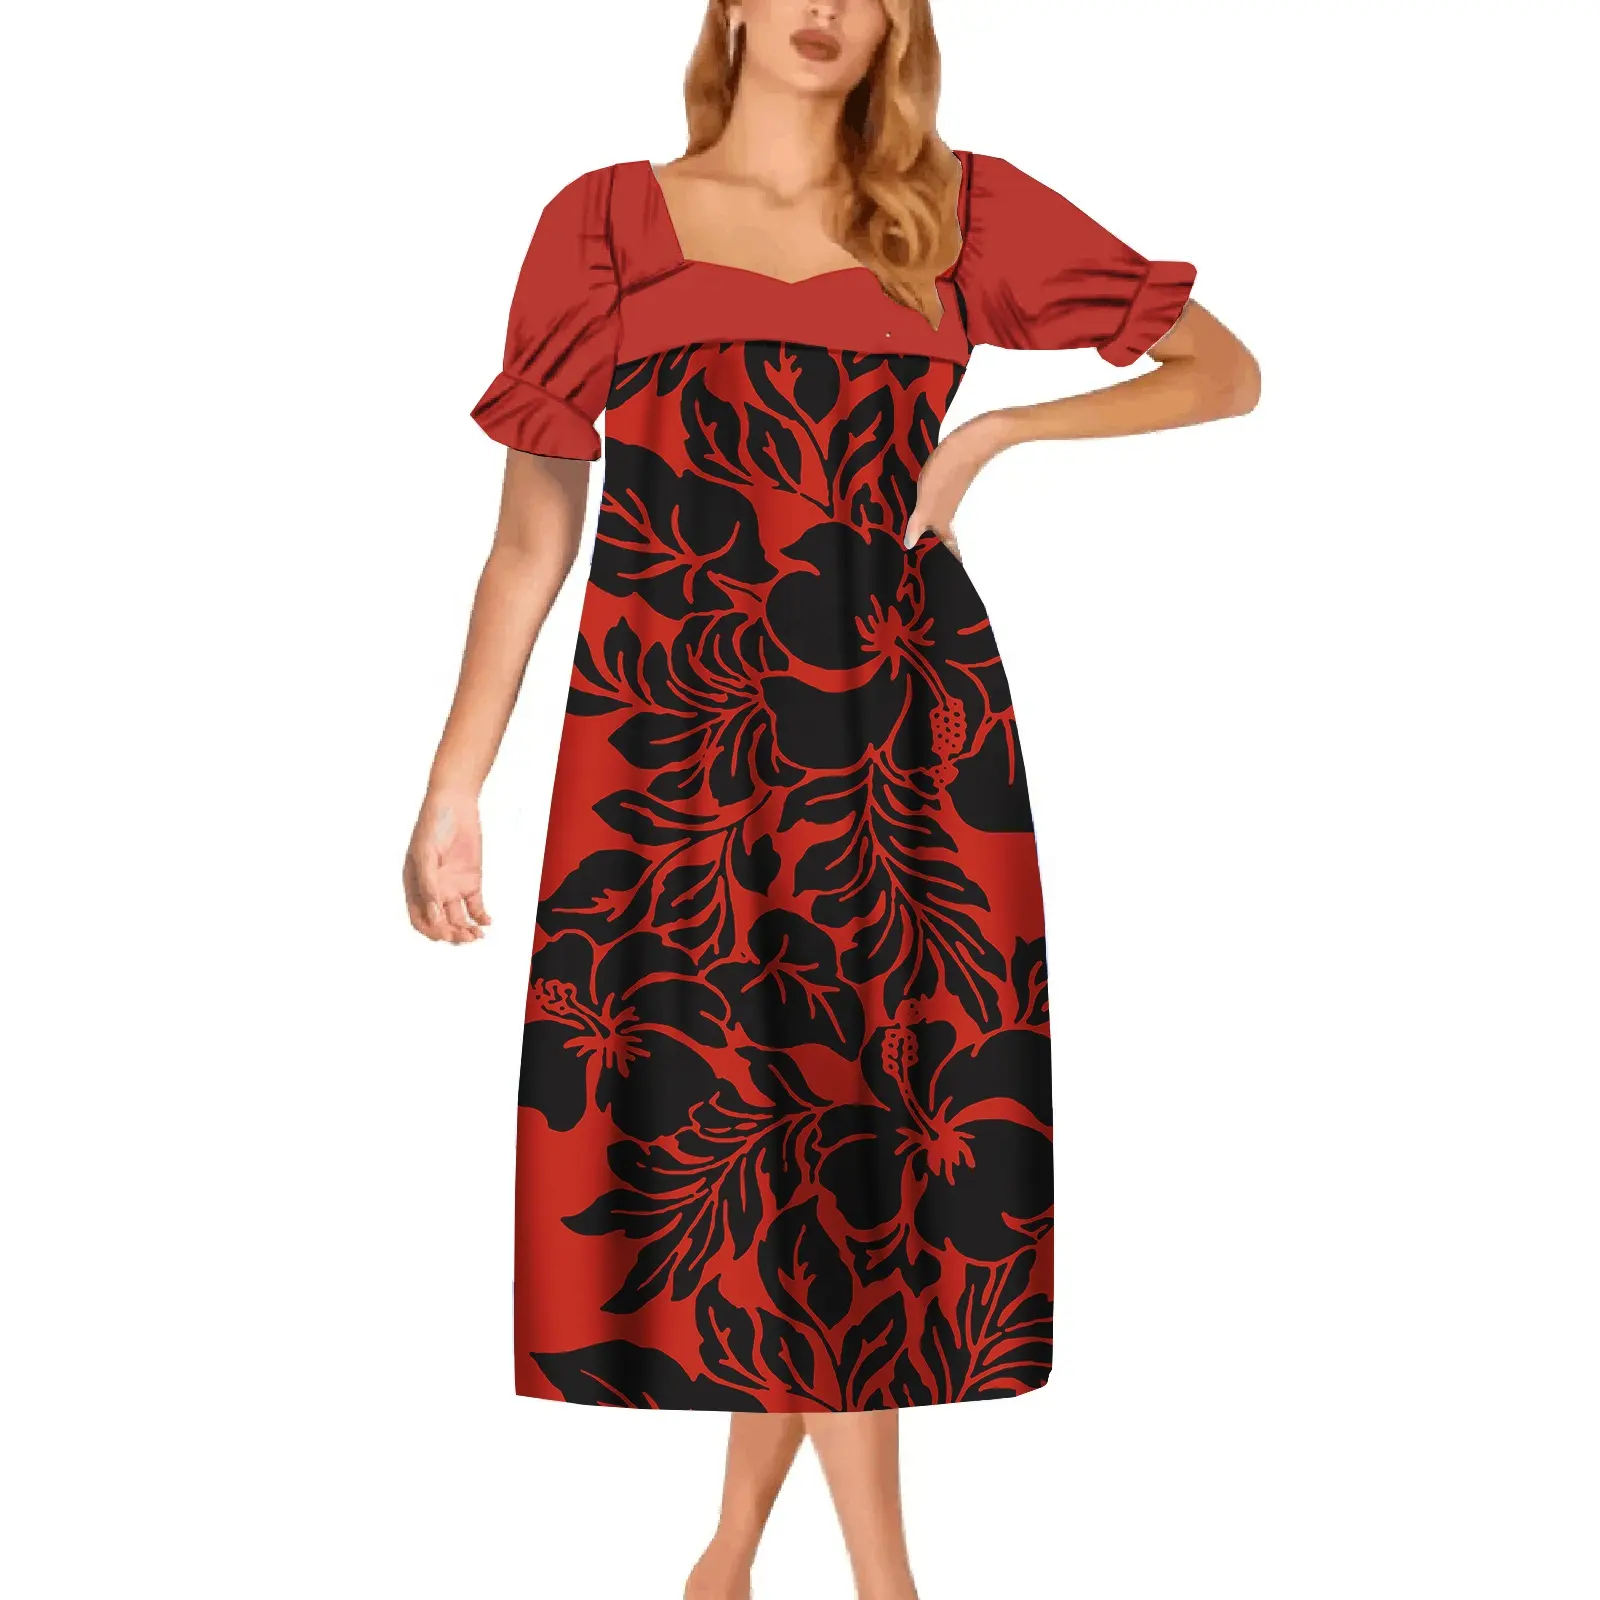 최신 디자인 플러스 사이즈 드레스 스커트 히비스커스 인쇄 우아한 숙녀 긴 드레스 폴리네시아 하와이 부족 파티 mumu 드레스